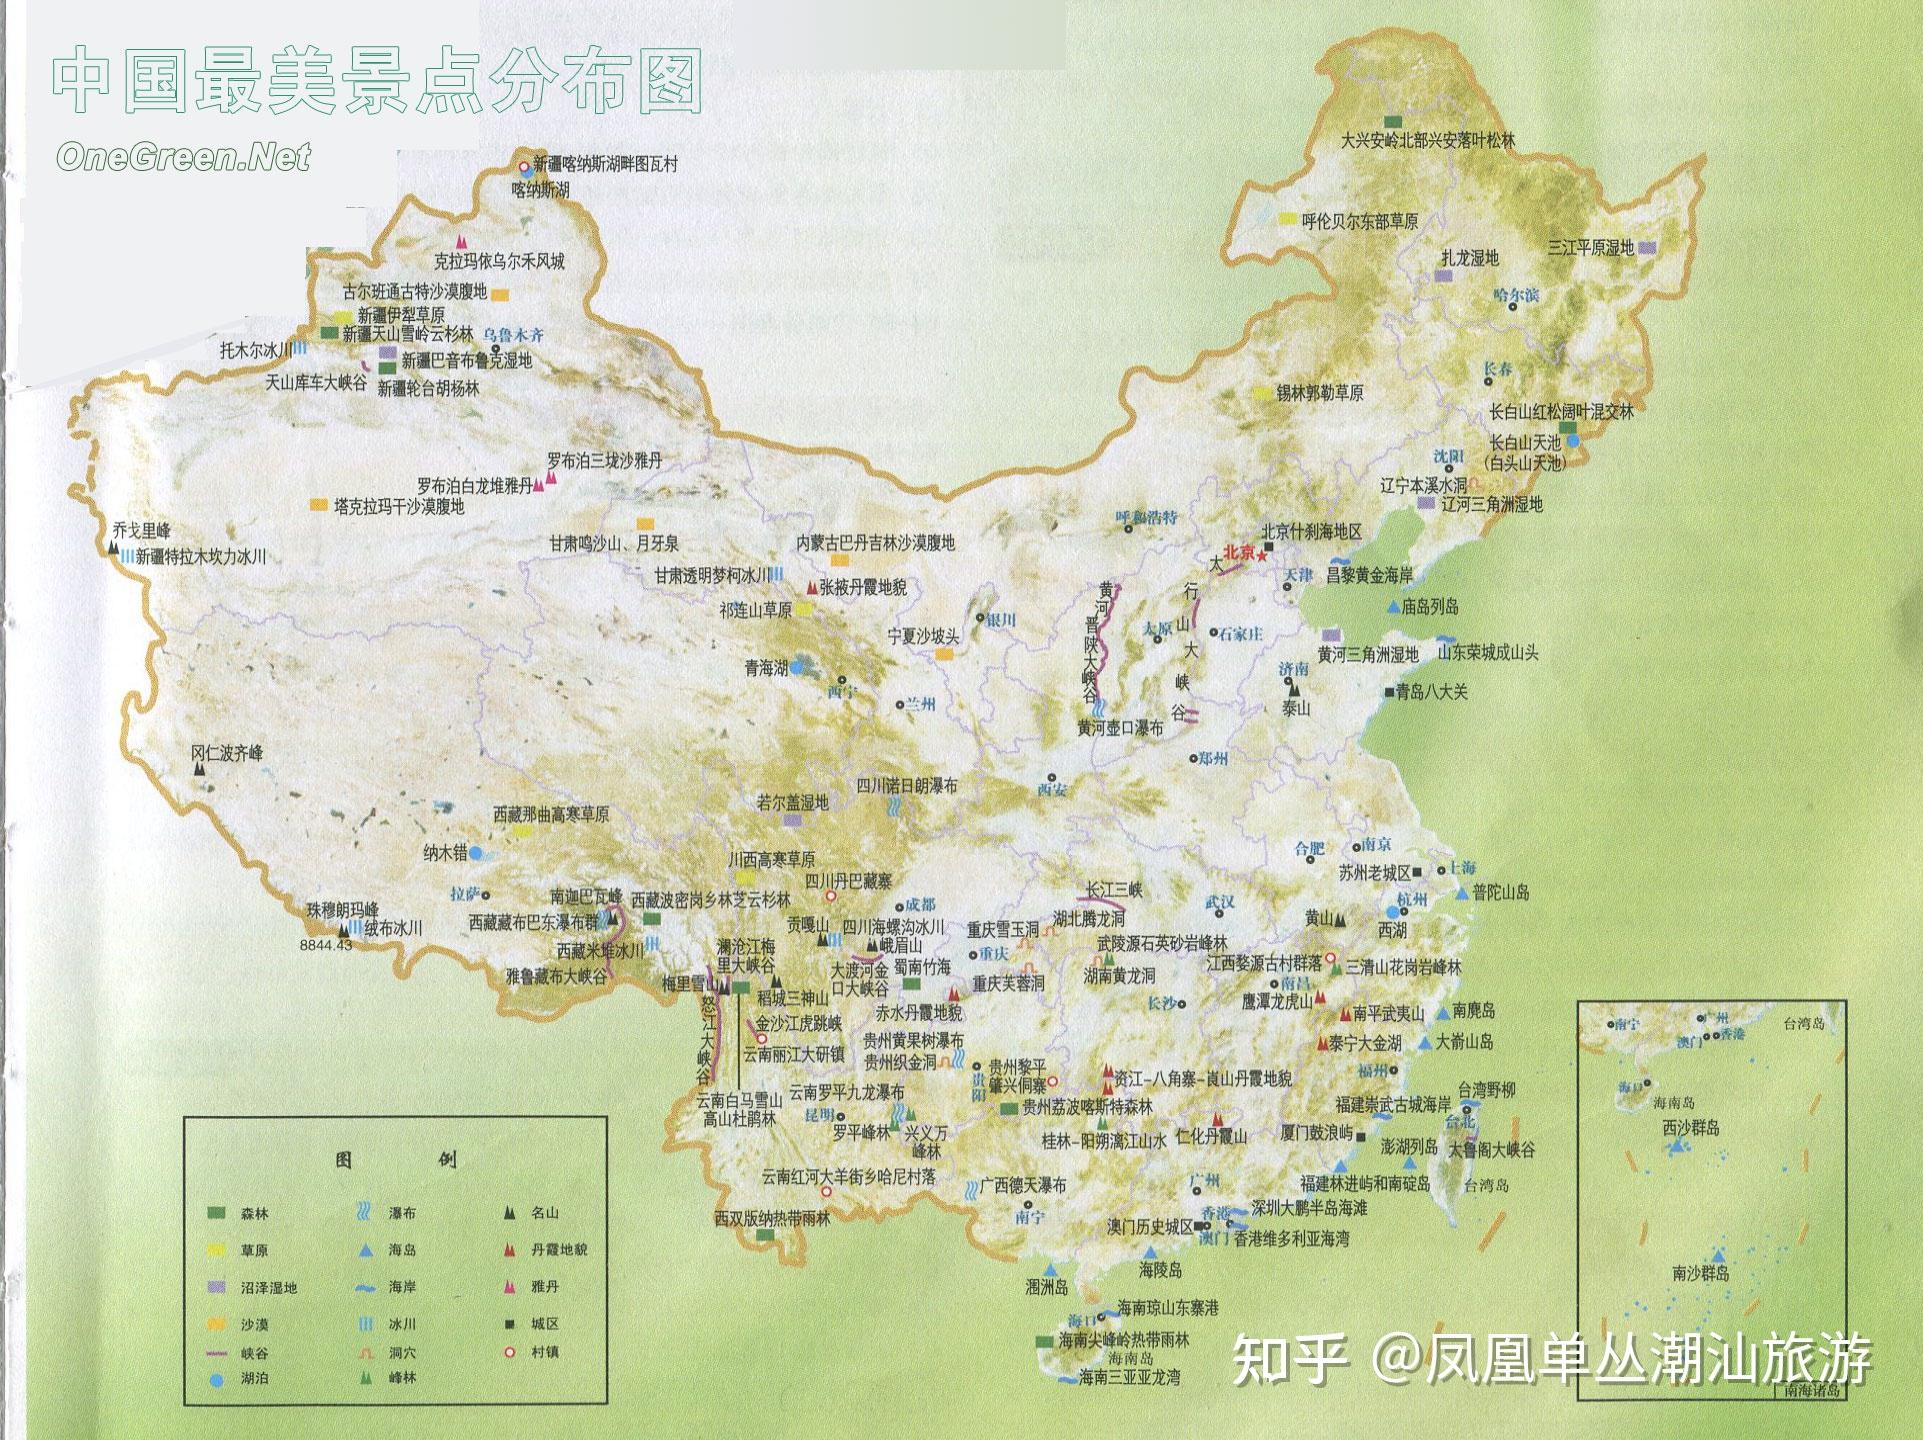 30、云南旅游景点分布图